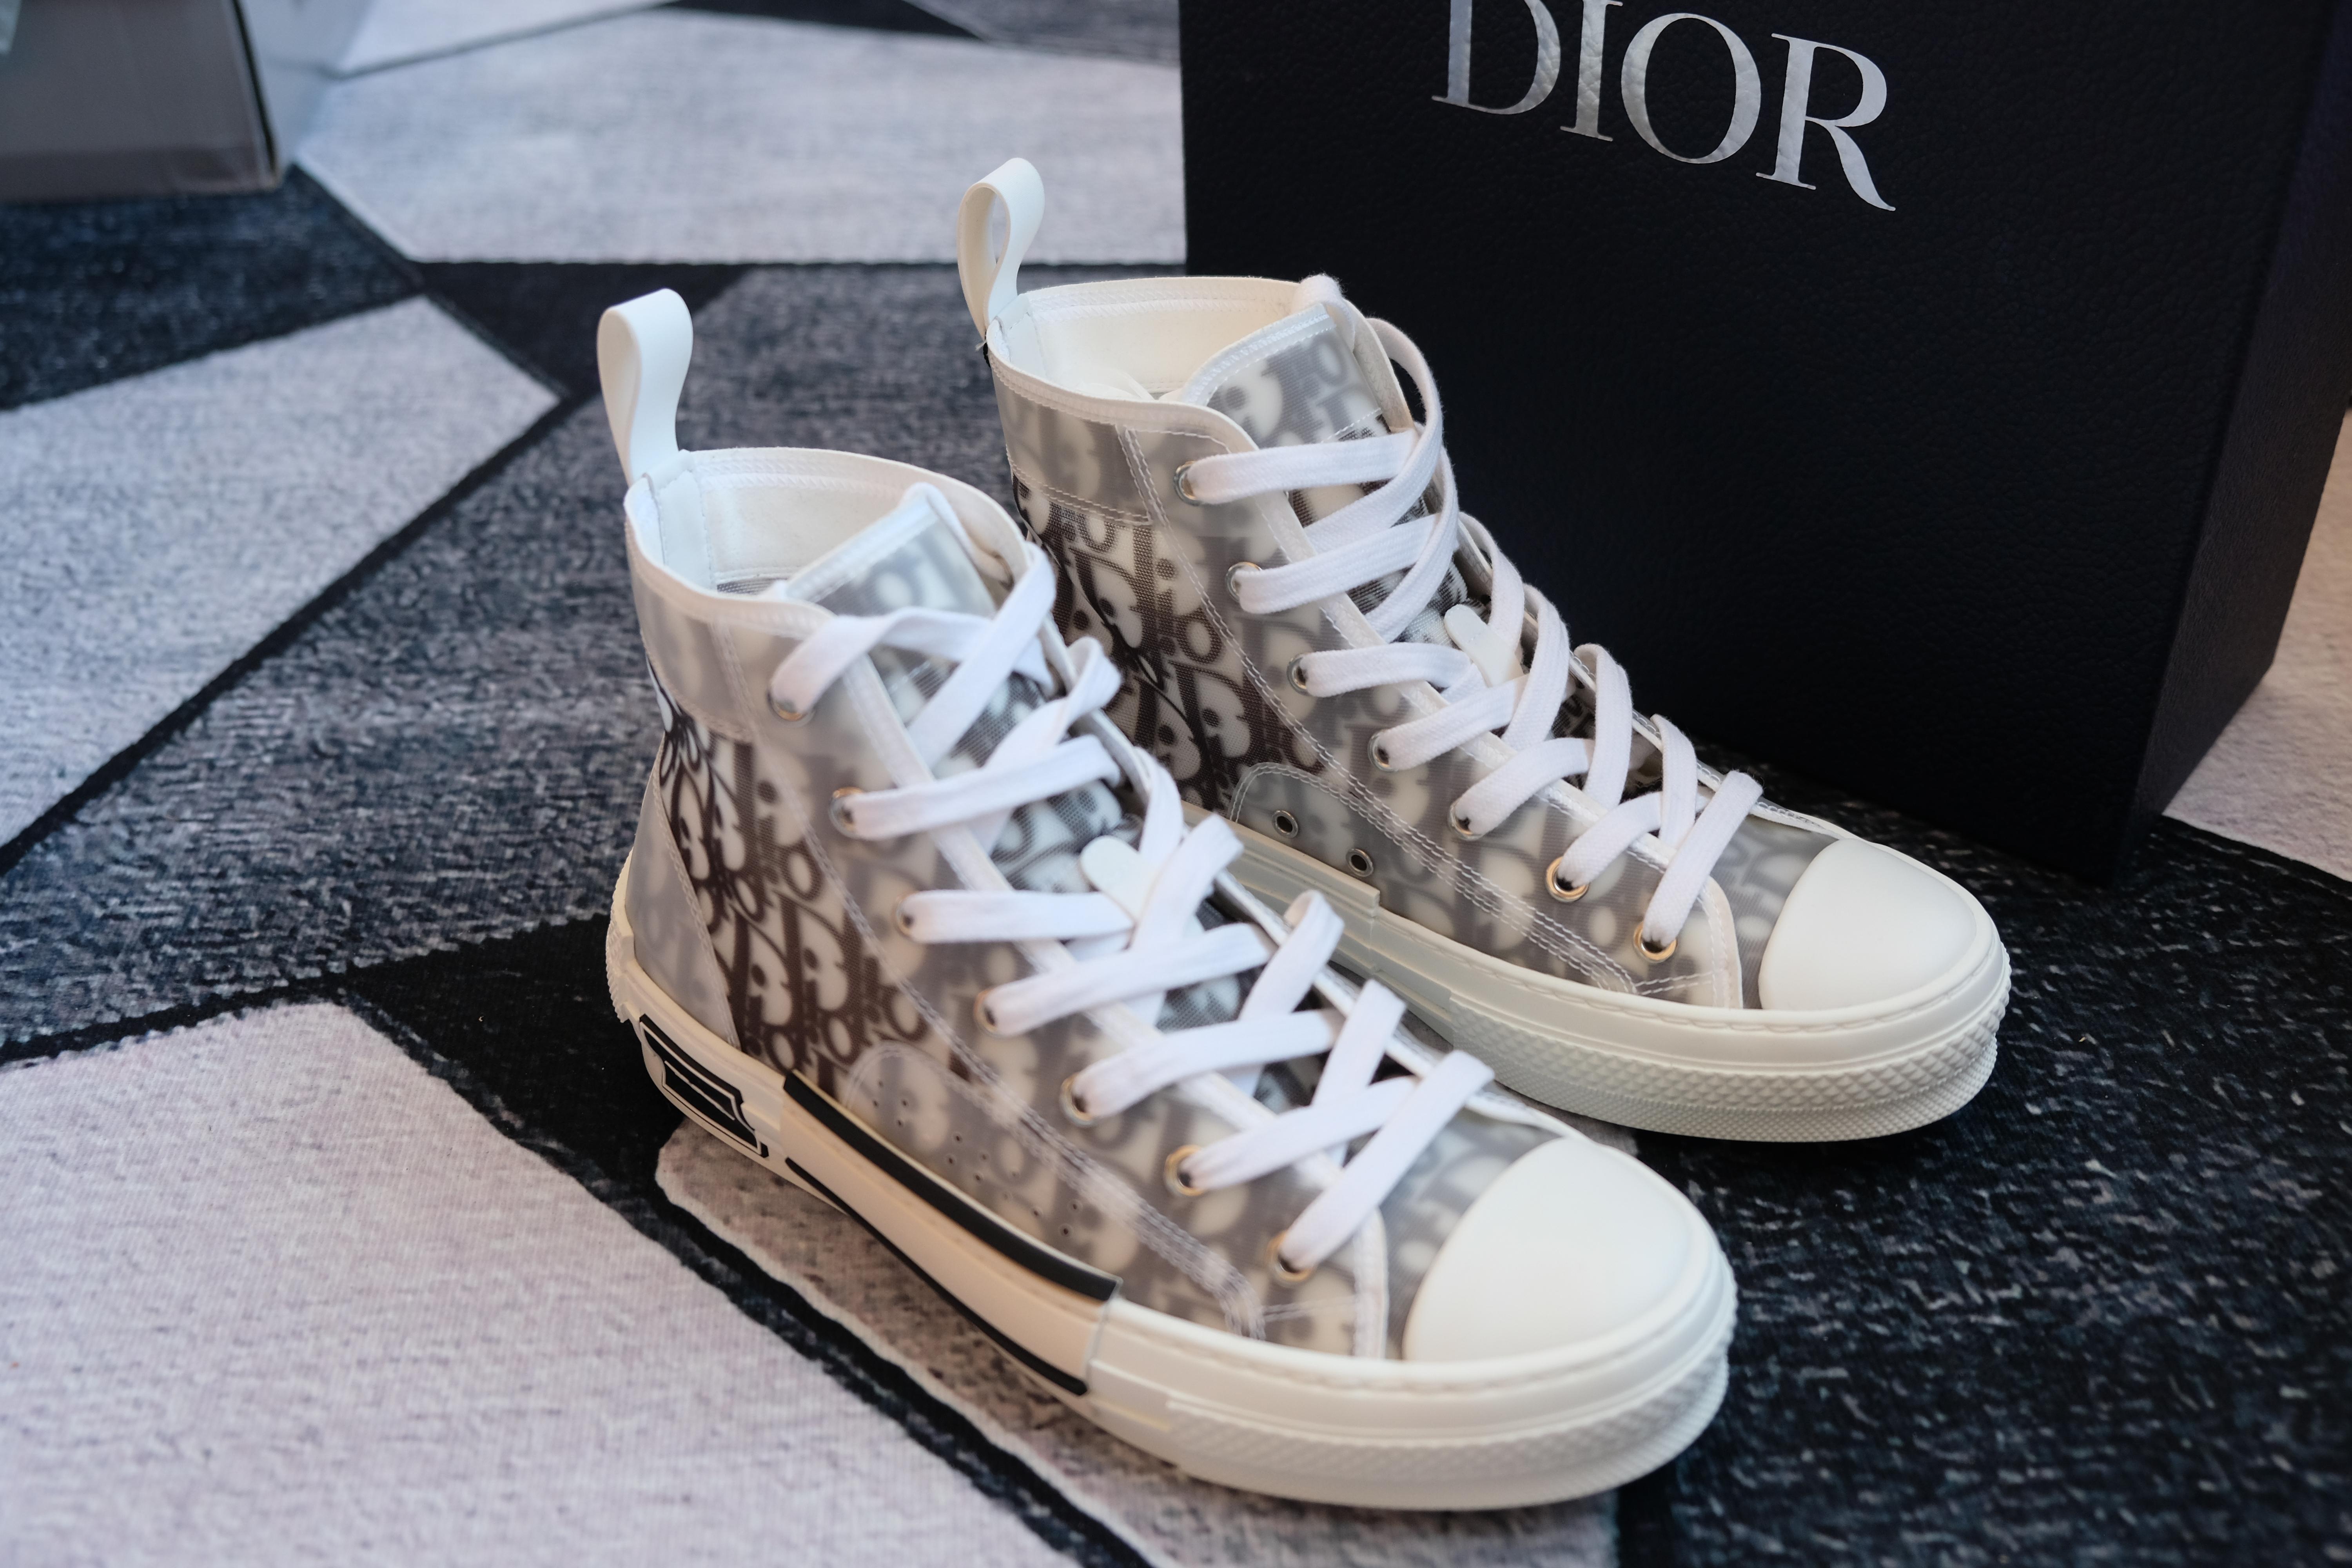 限量 8500 双！Dior x AJ1 发售消息终于来了！ 球鞋资讯 FLIGHTCLUB中文站|SNEAKER球鞋资讯第一站